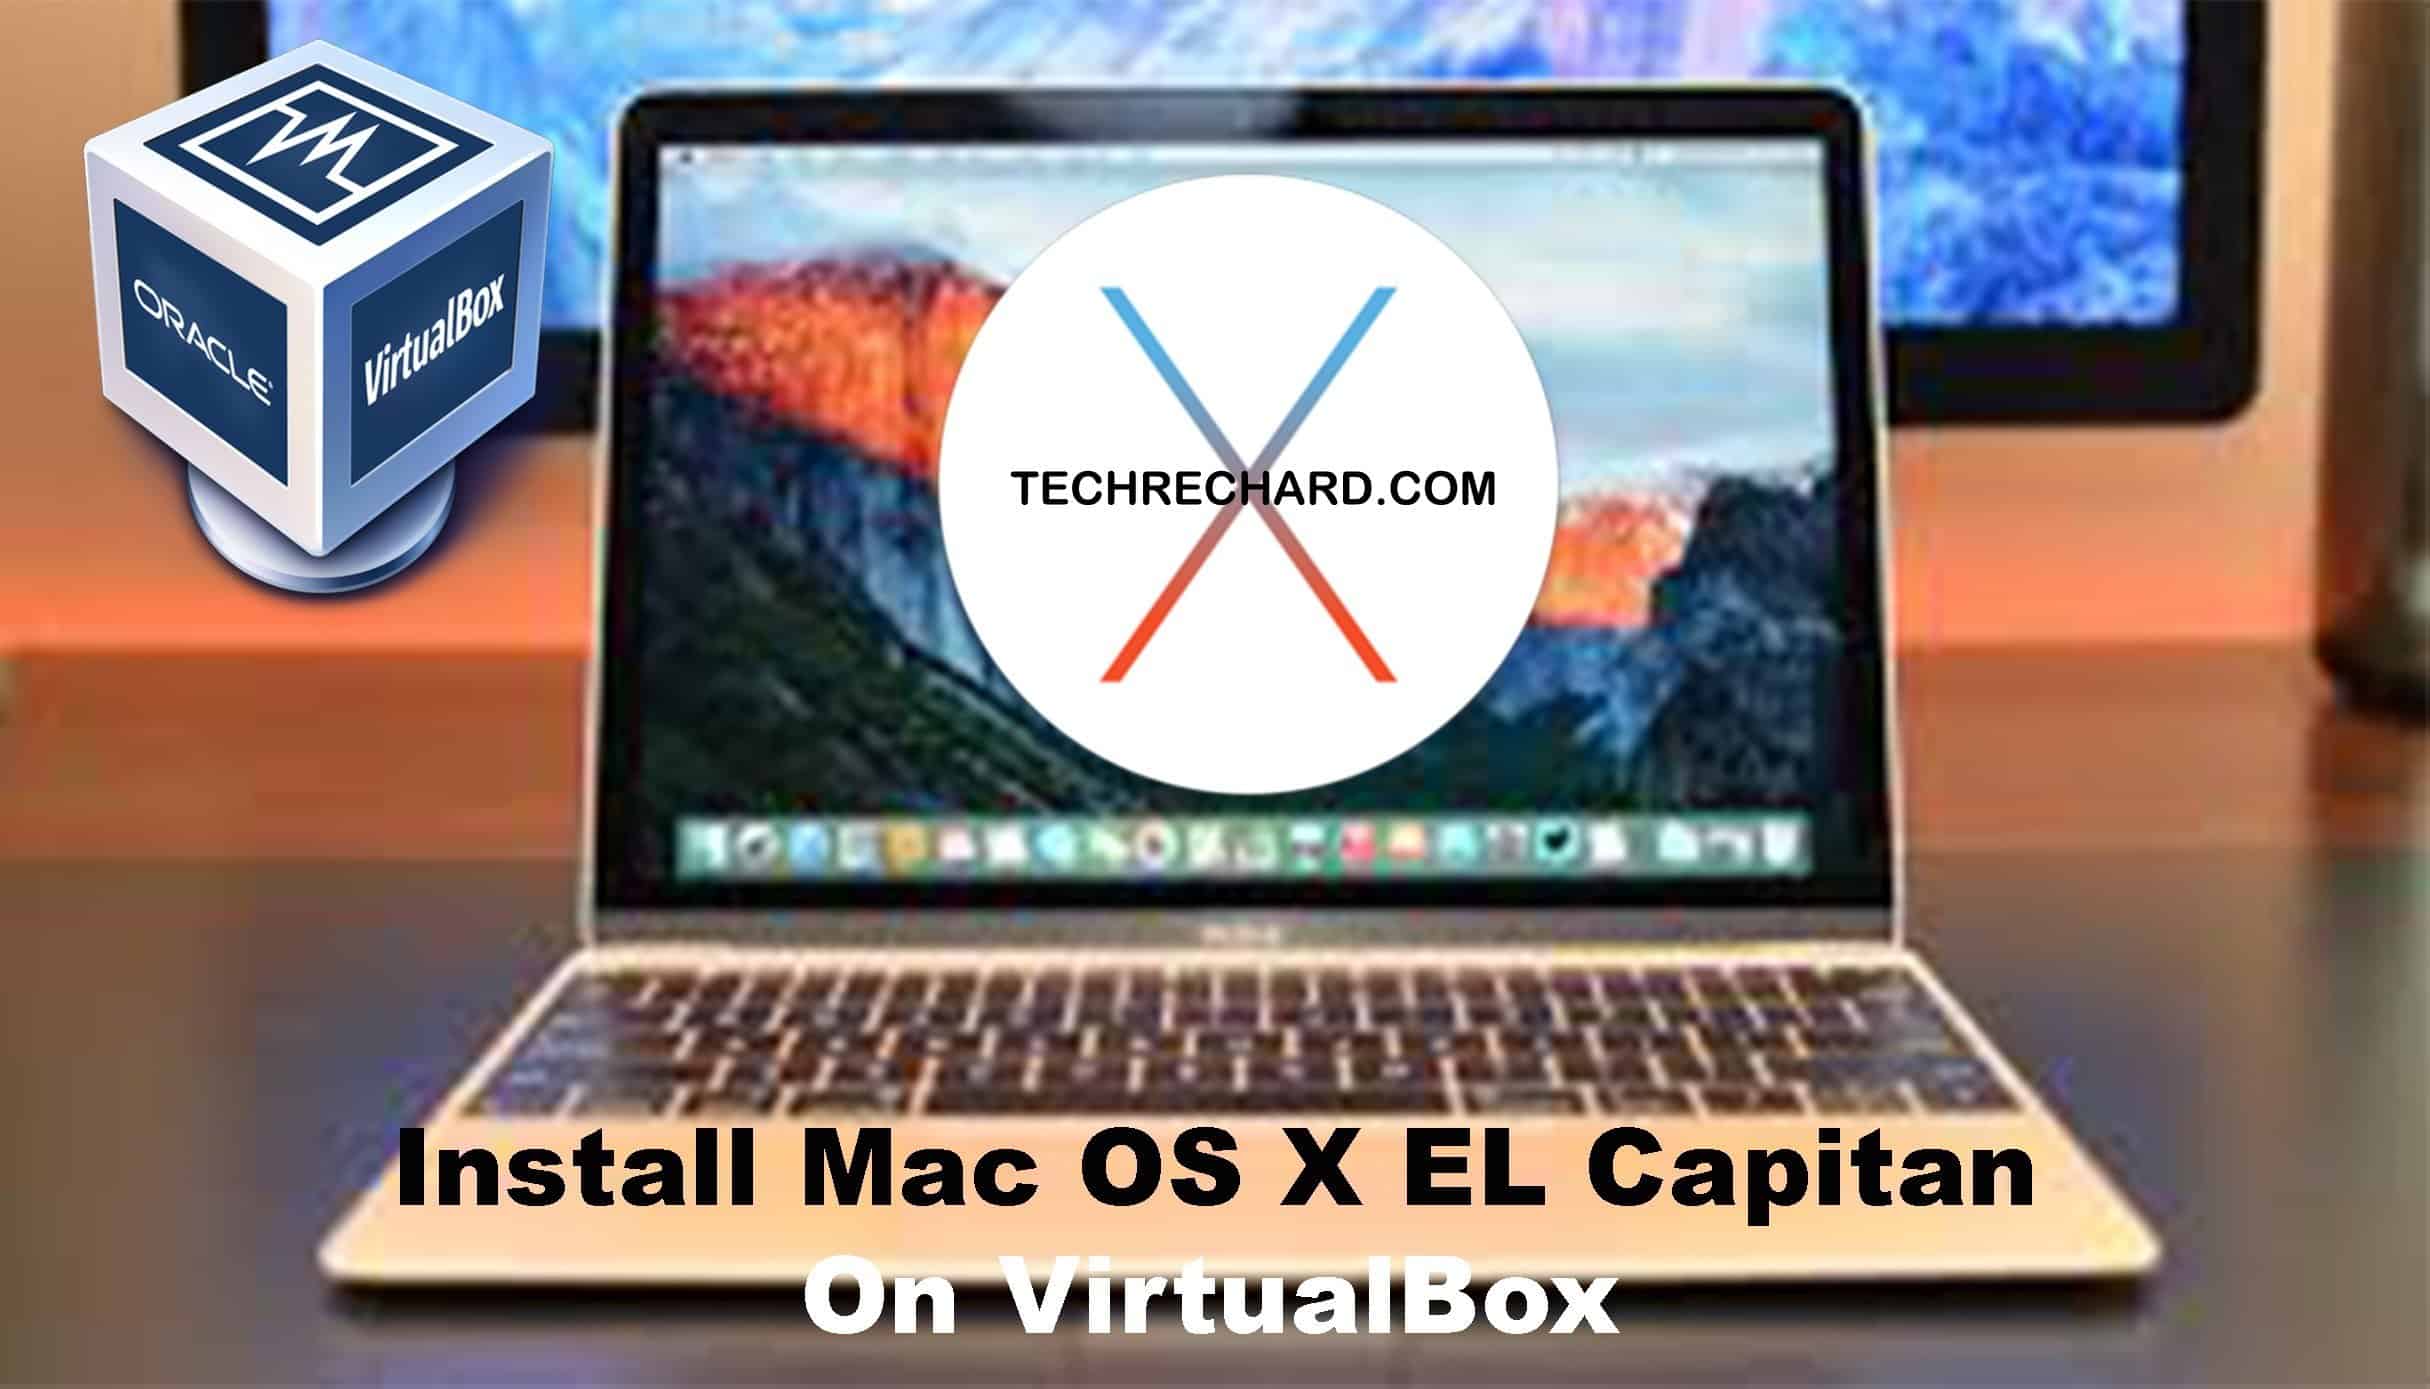 virtualbox for mac os x 10.7.5